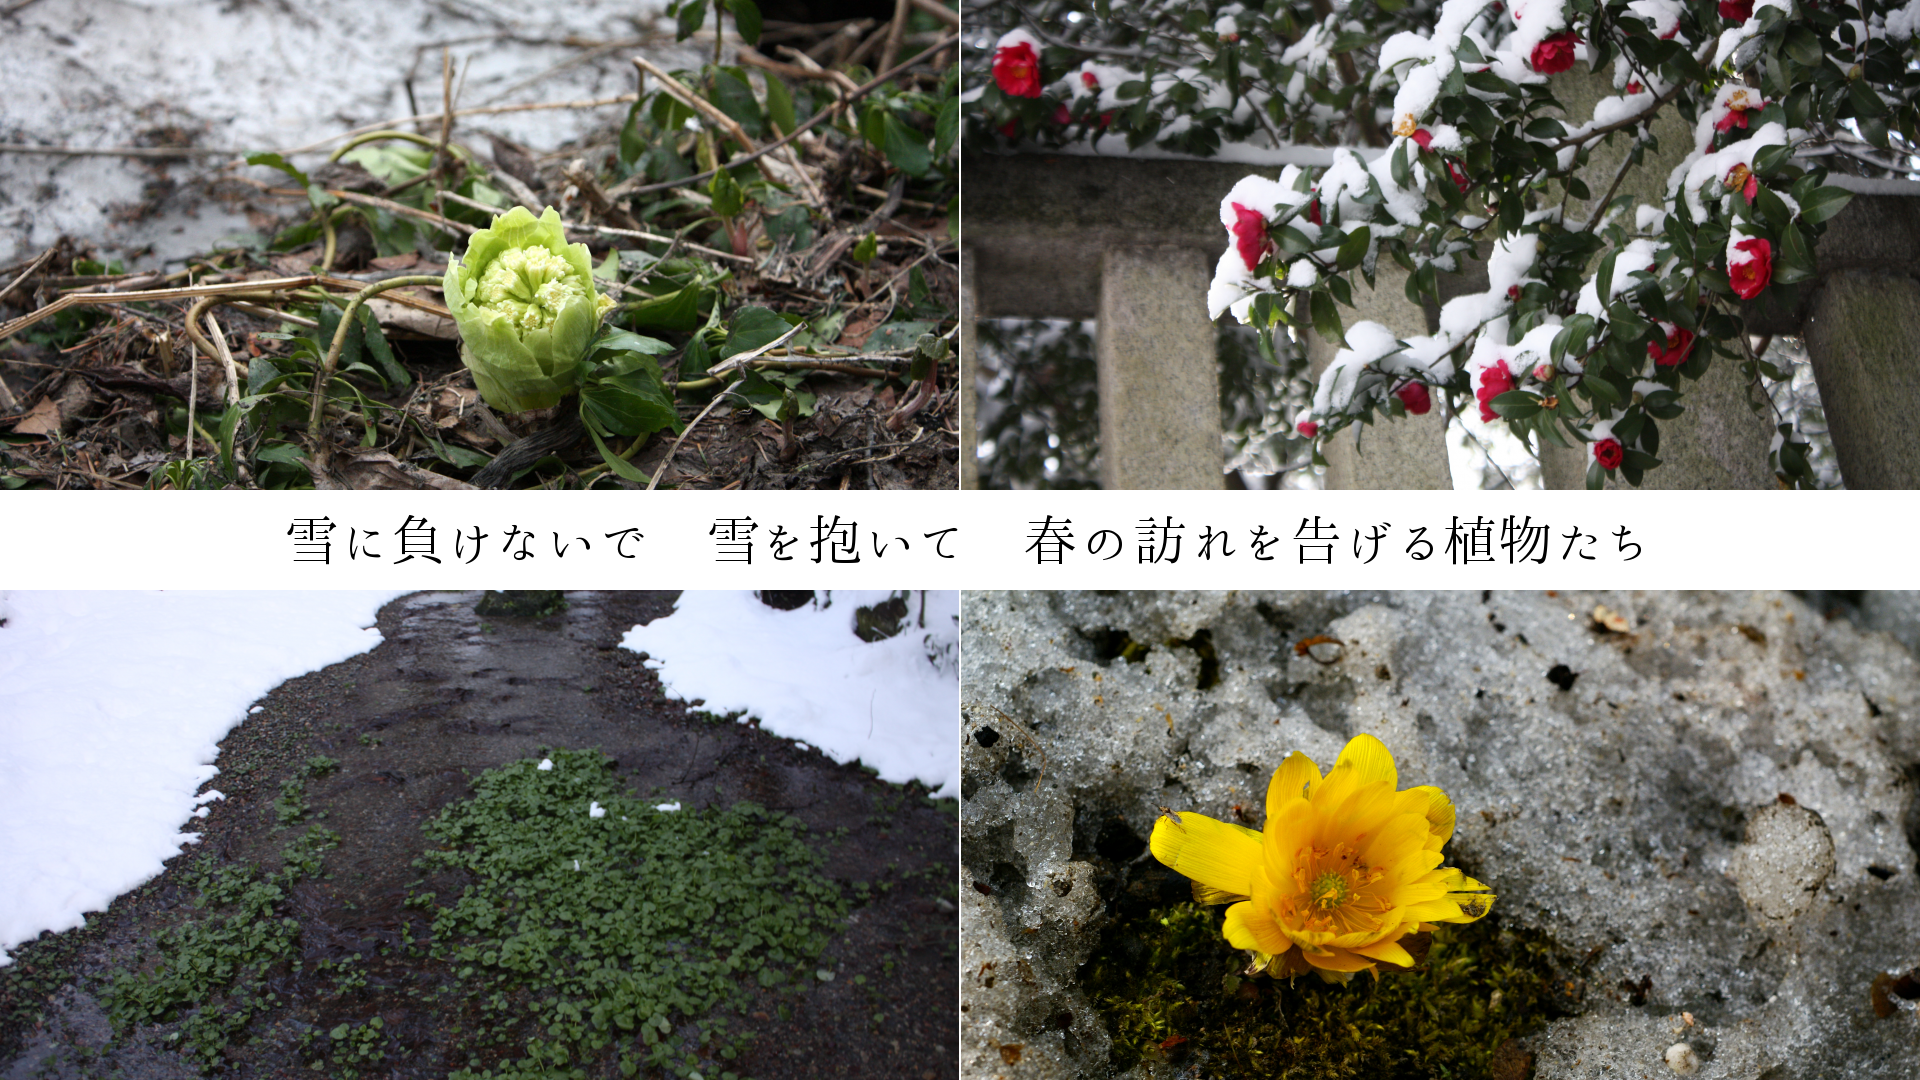 雪に負けないで　雪を抱いて　春の訪れを告げる植物たち